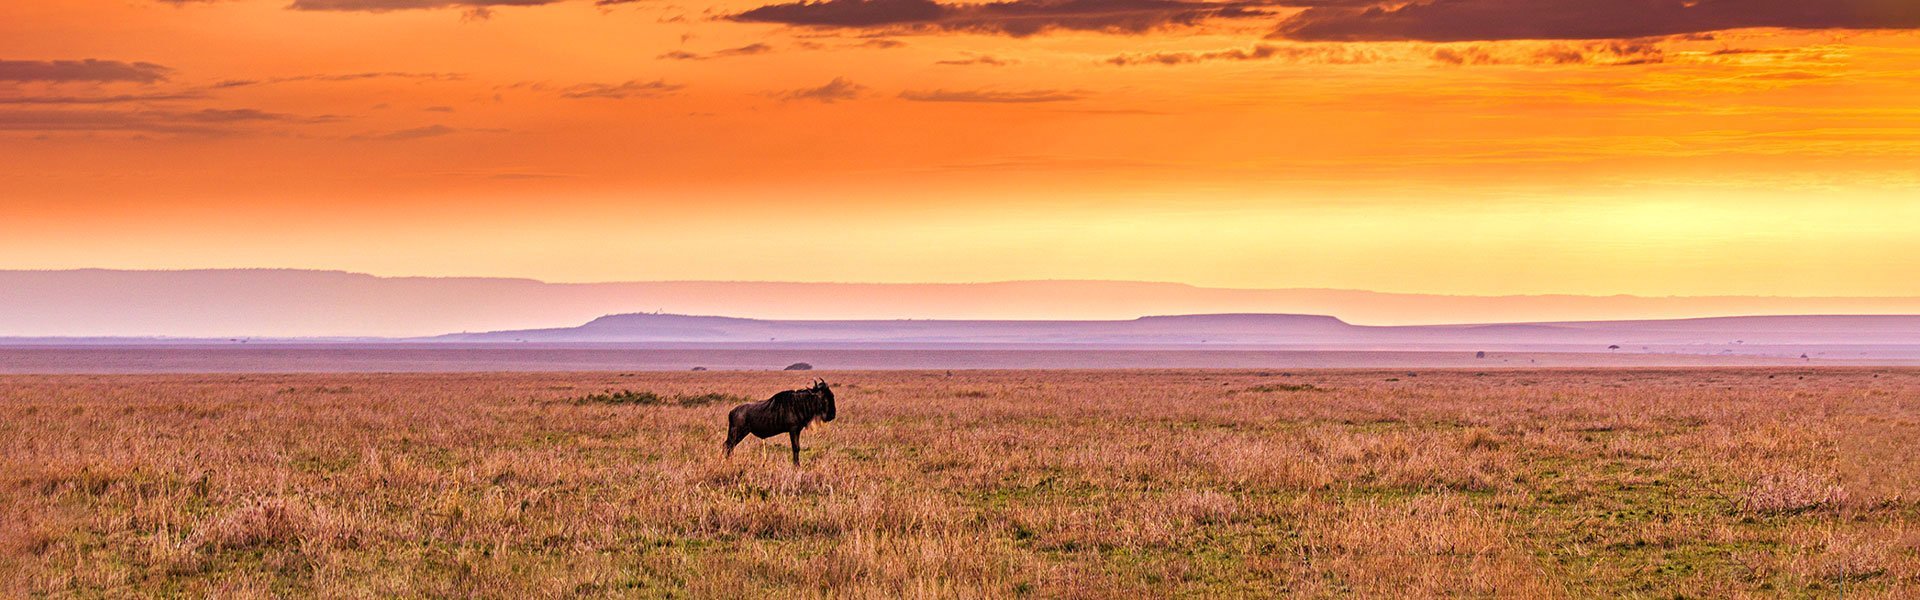 Buffel in Kenia